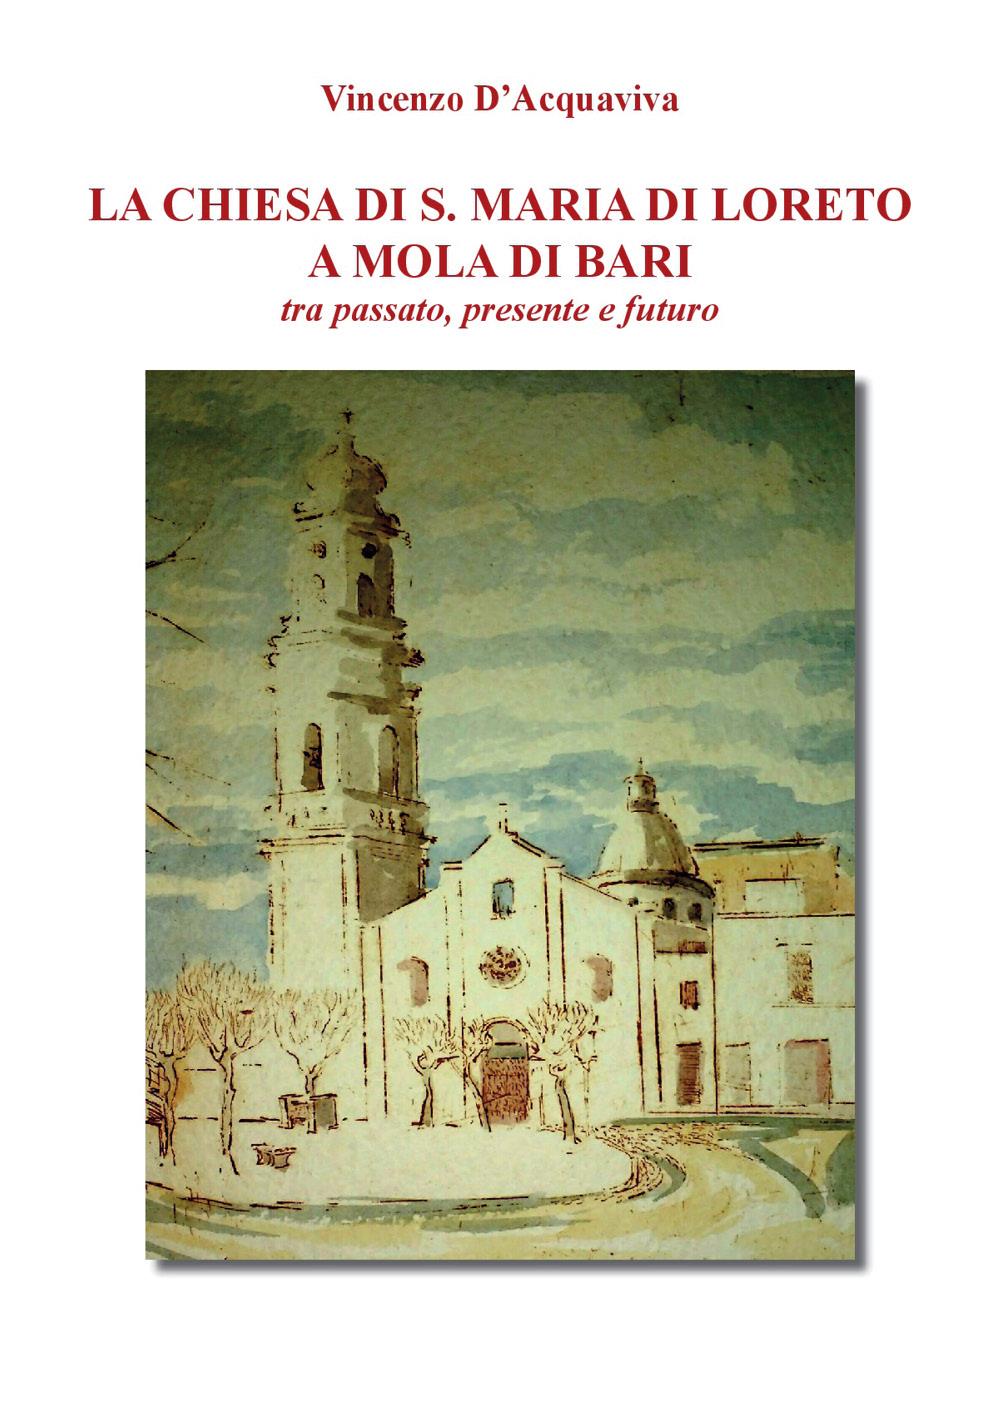 La Chiesa di Santa Maria di Loreto a Mola di Bari tra passato presente e futuro